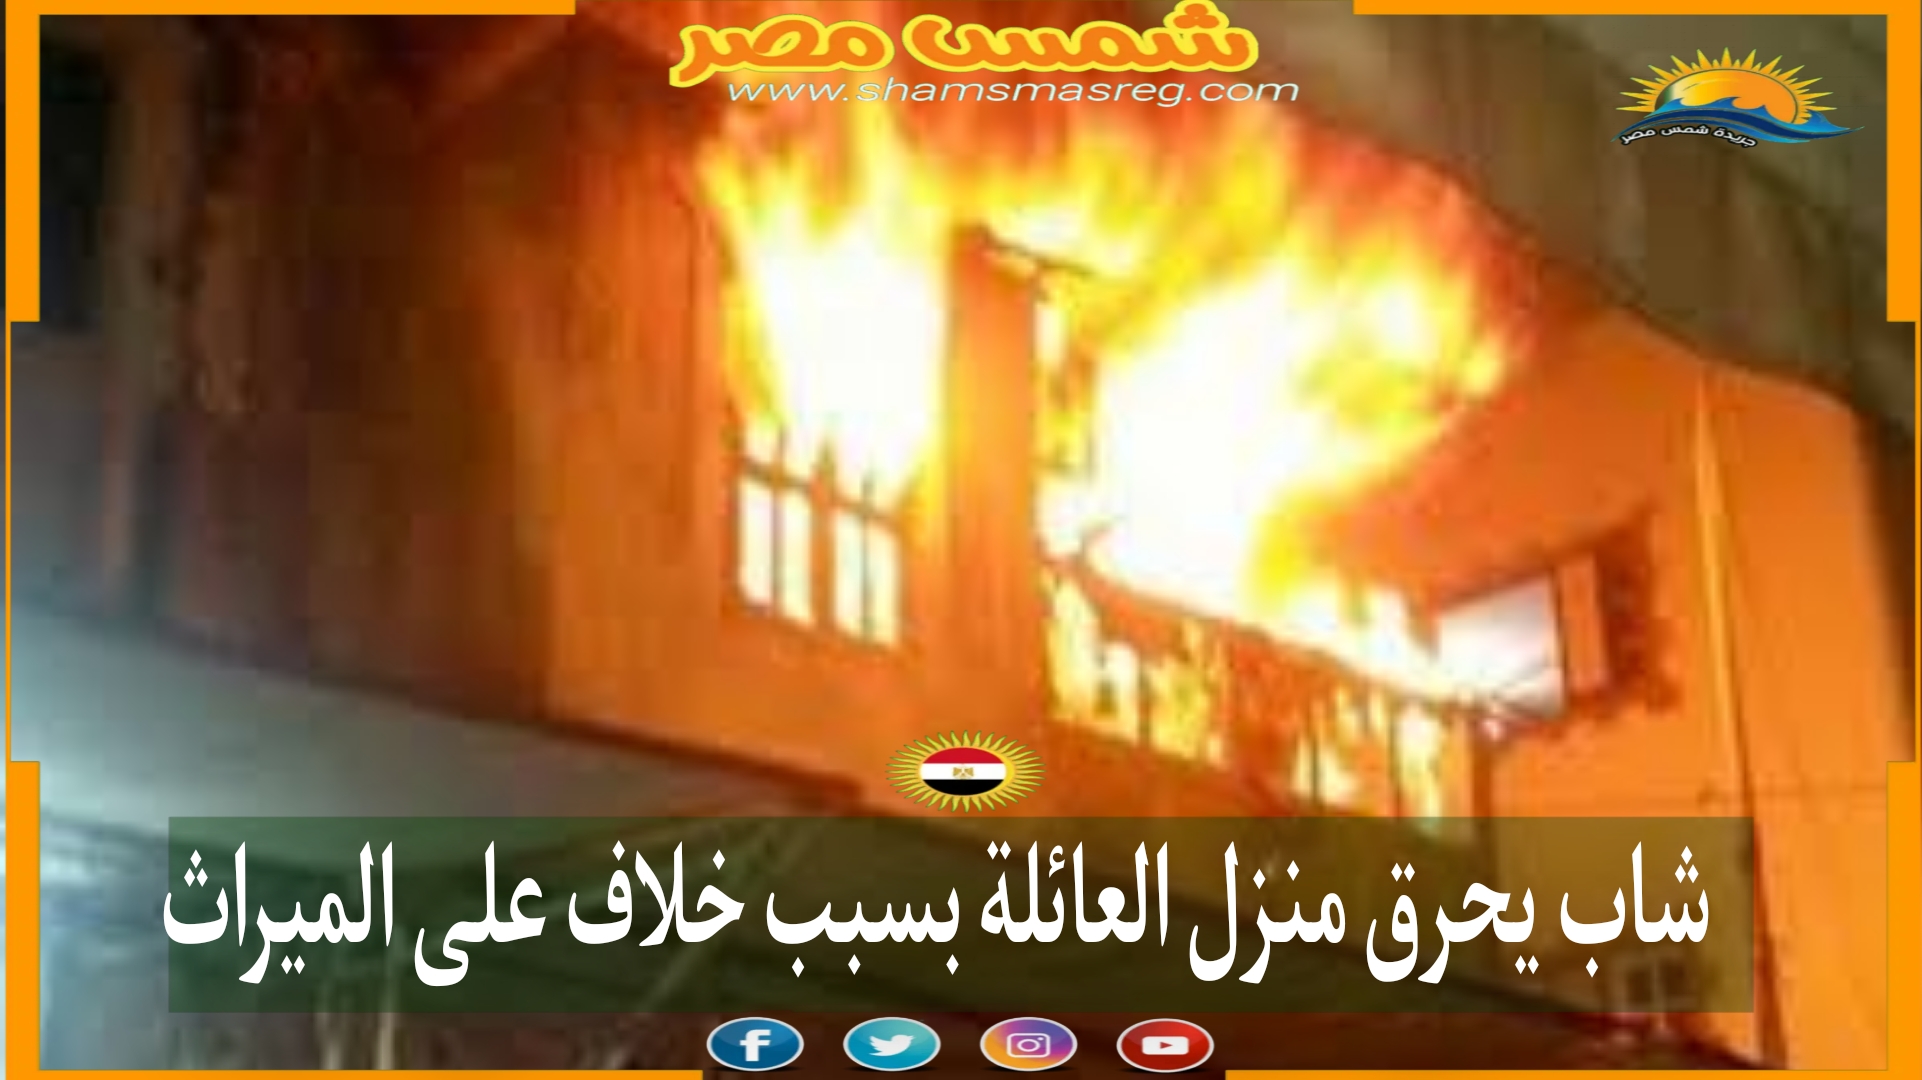 شاب يحرق منزل العائلة بسبب خلاف على الميراث